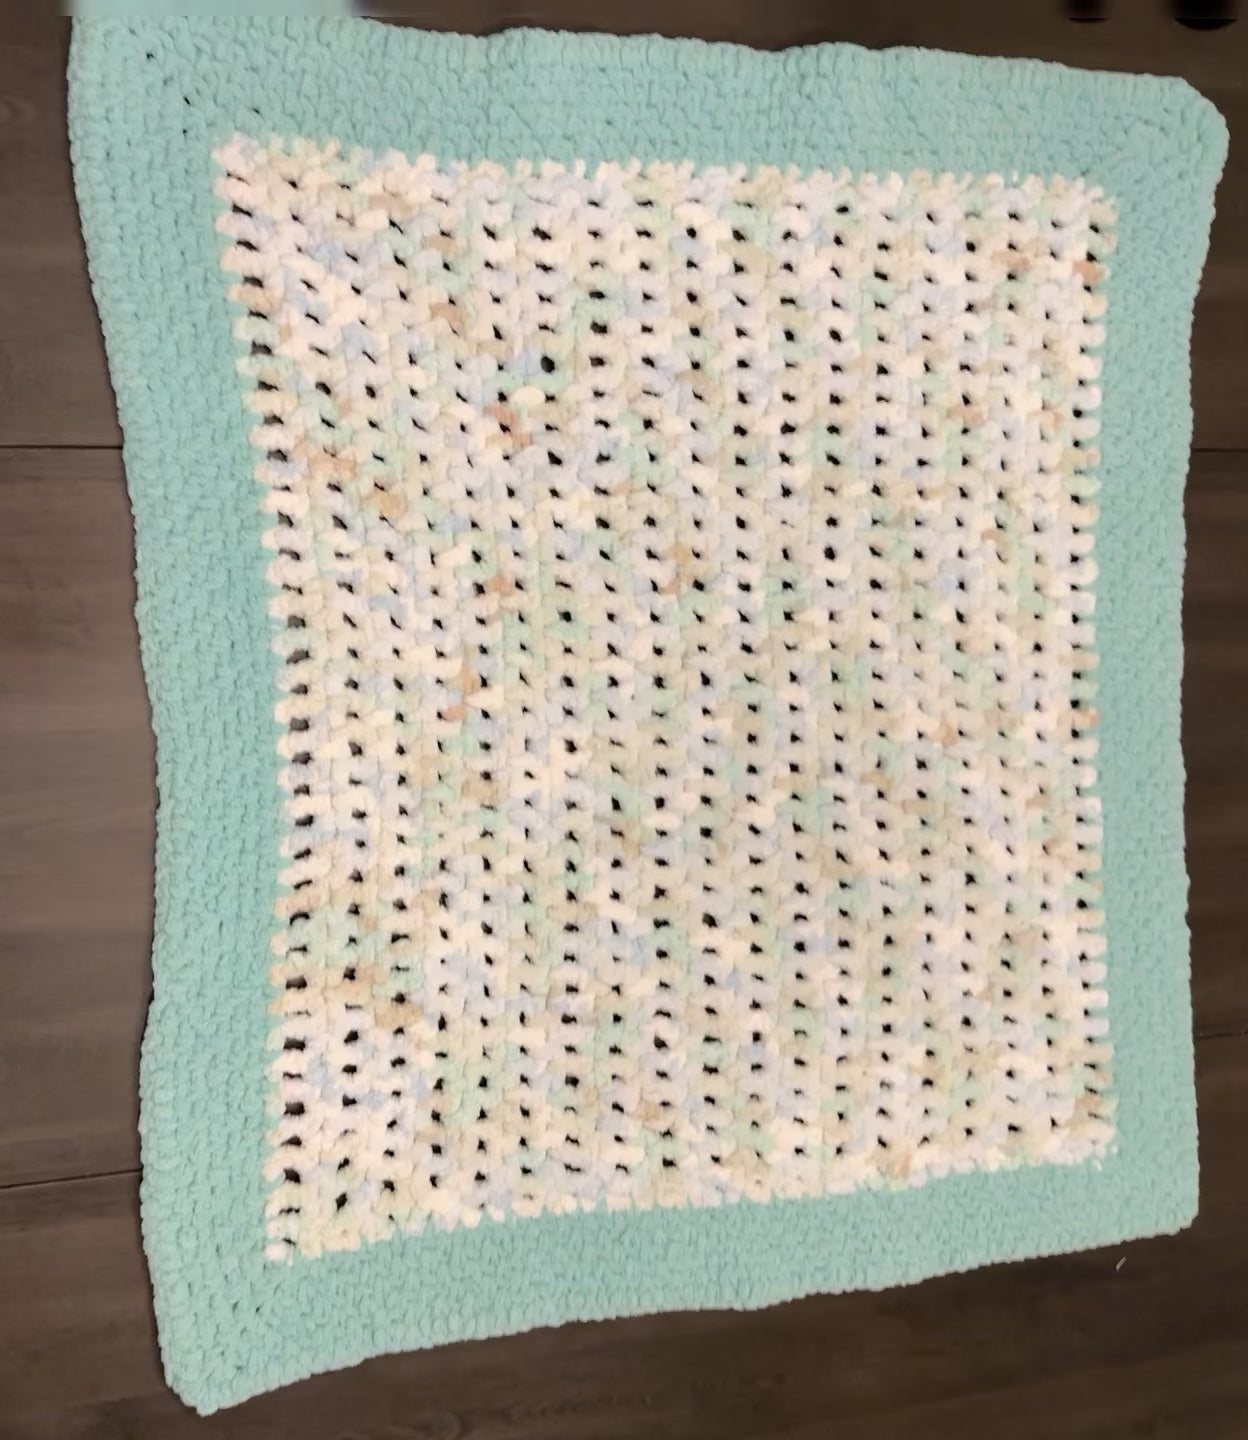 Handmade crochet blanket measuring 32" x 34"